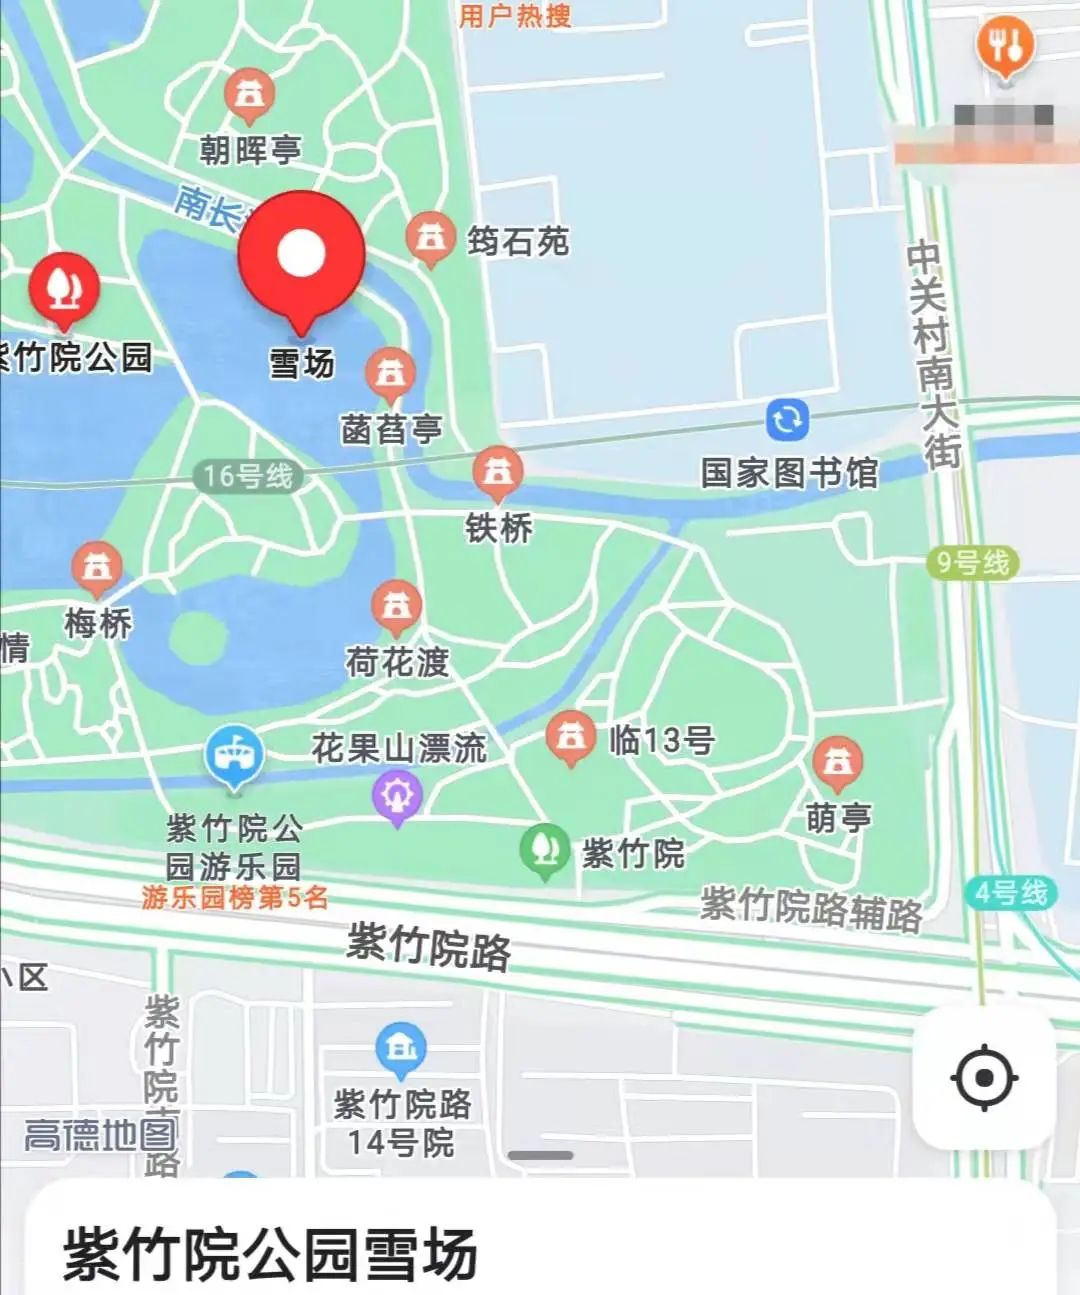 紫竹院公园地图和介绍图片